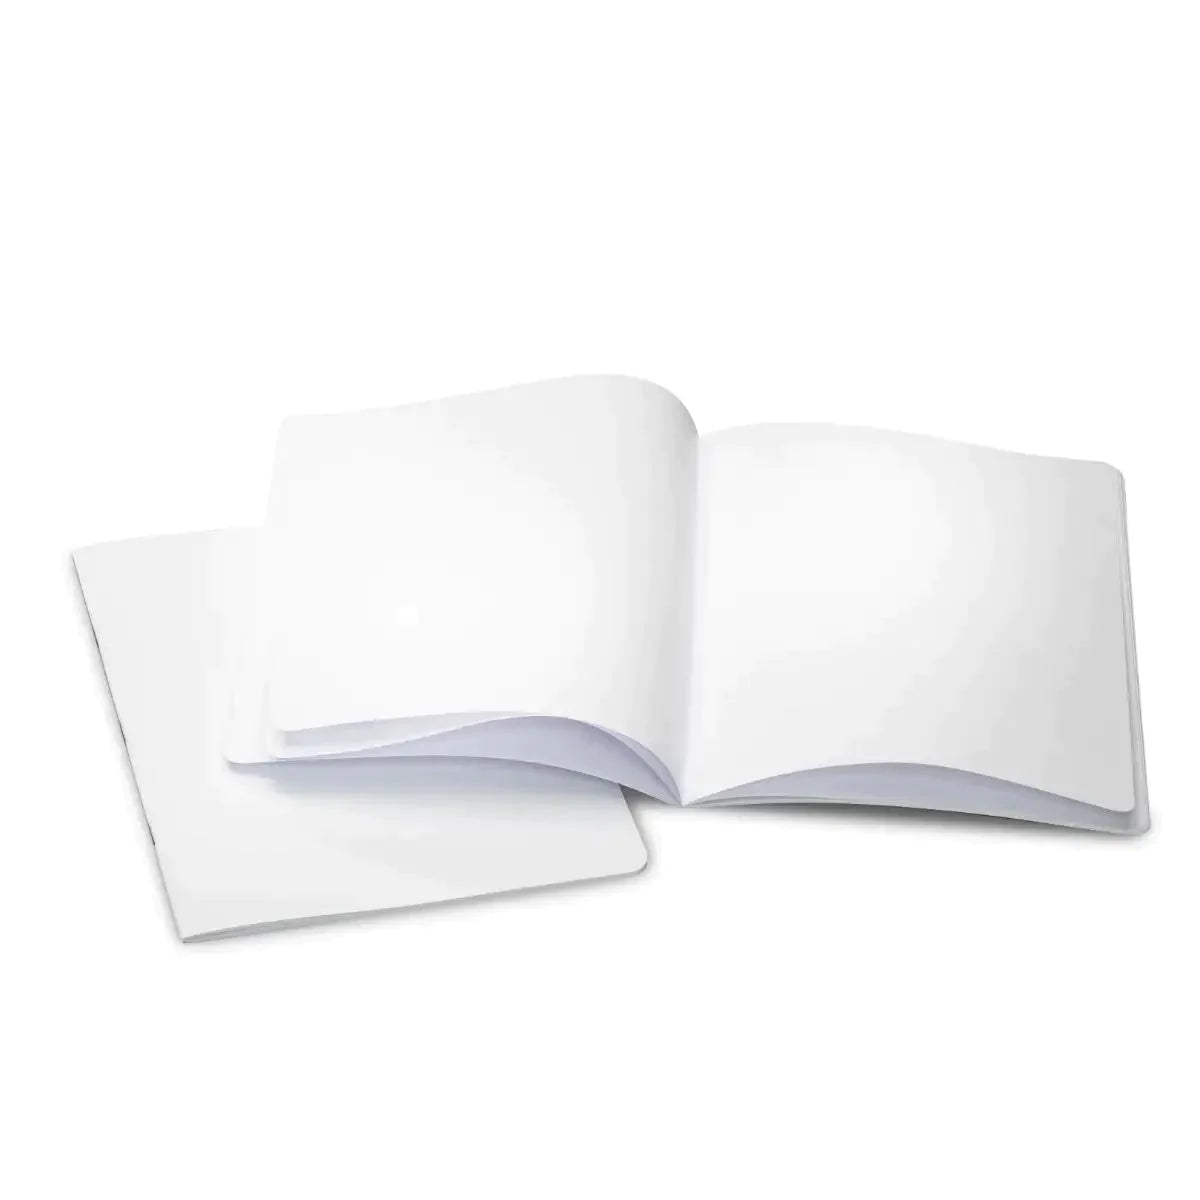 Classic Main Lesson Book, Portrait (9.45"x12.6"), Blank (No Onion Skin) Blank Main Lesson Book - Alder & Alouette